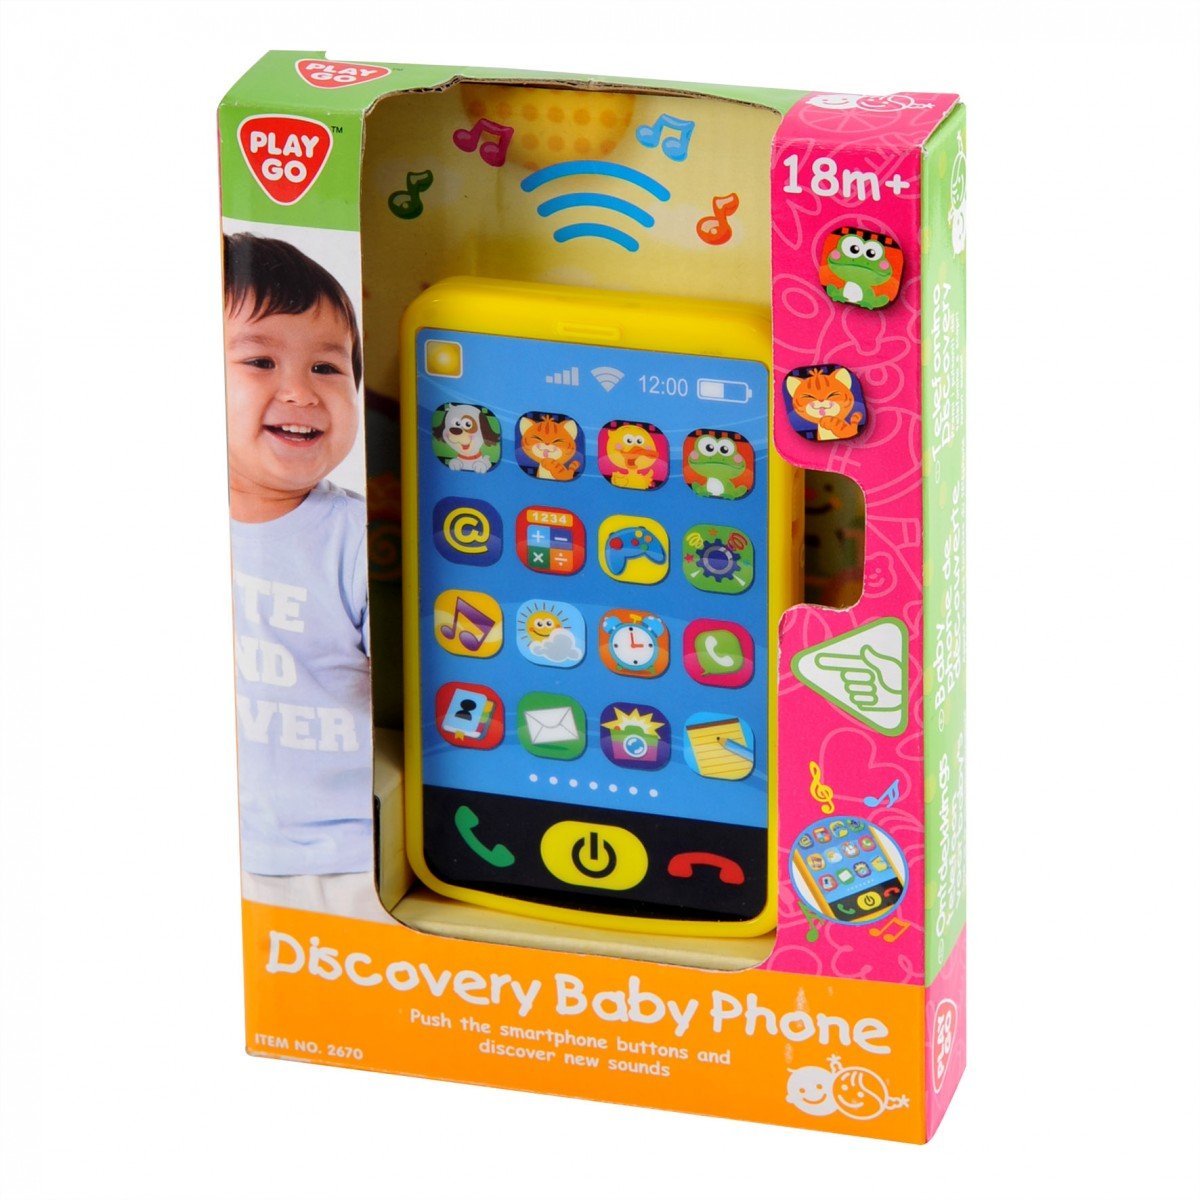 สมาร์โฟนน้องน้อย Discovery baby Phone  (รุ่น 2671) ยี่ห้อ PLAYGO